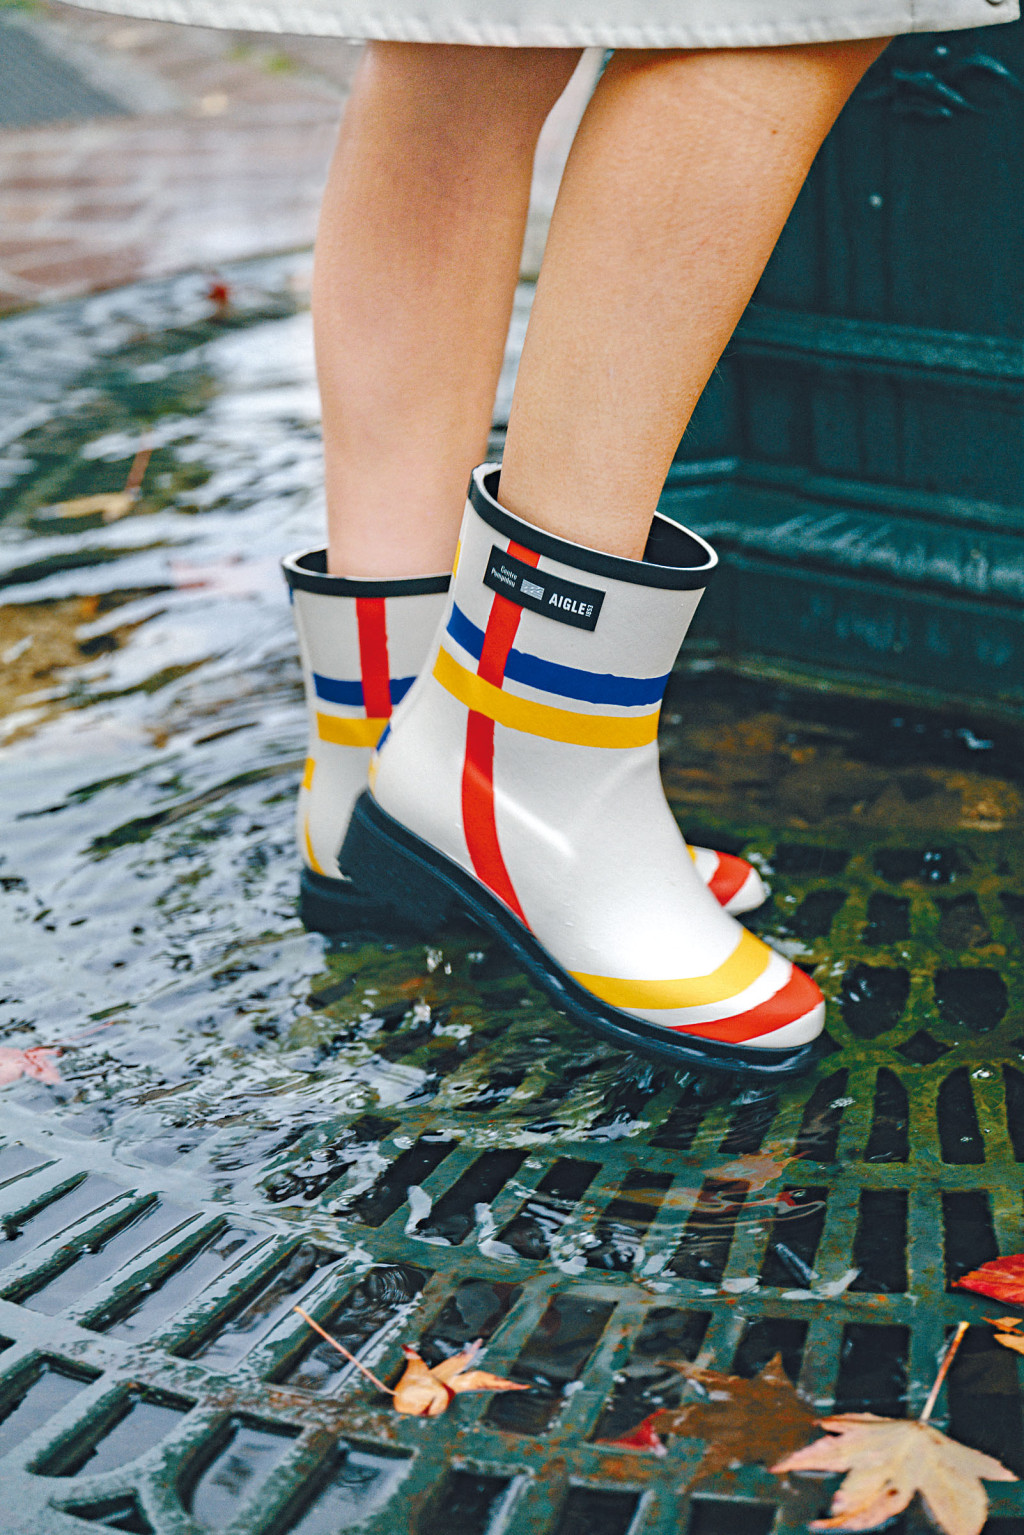 法國製手工天然橡膠女裝靴/$2,280，靴身飾以荷蘭藝術大師Piet Mondrian名作《New York City》的色彩綫條圖案；Aigle會員購物滿指定金額可獲贈摺疊雨傘。（Aigle）